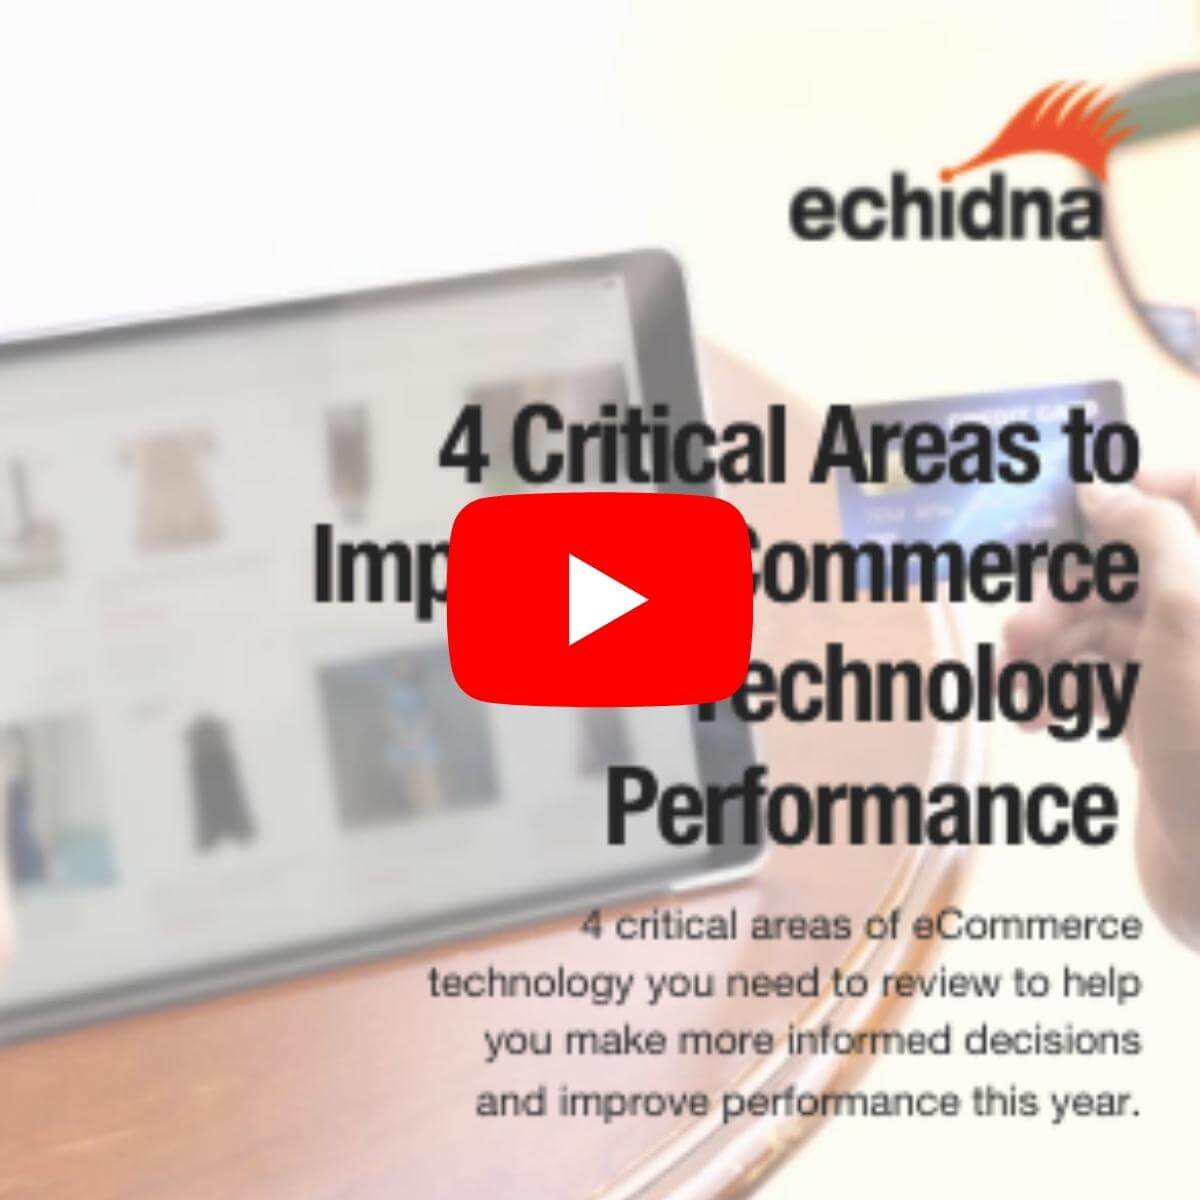 improving ecommerce technology performance